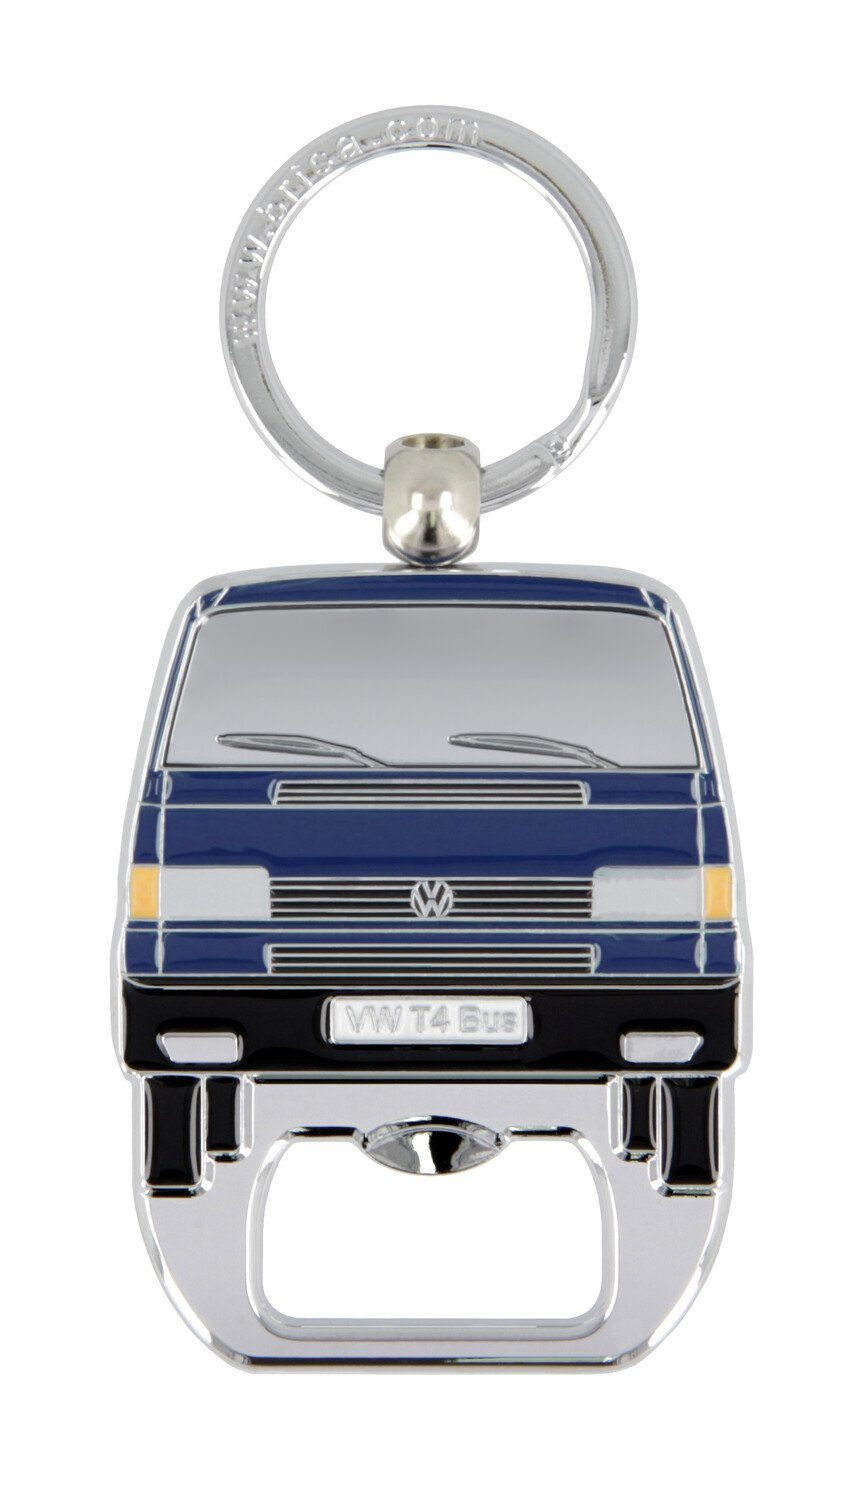 VW Collection by BRISA Schlüsselanhänger Volkswagen Schlüsselring mit Flaschenöffner im T4 Bulli Bus Design, Integrierter Flaschenöffner Blau